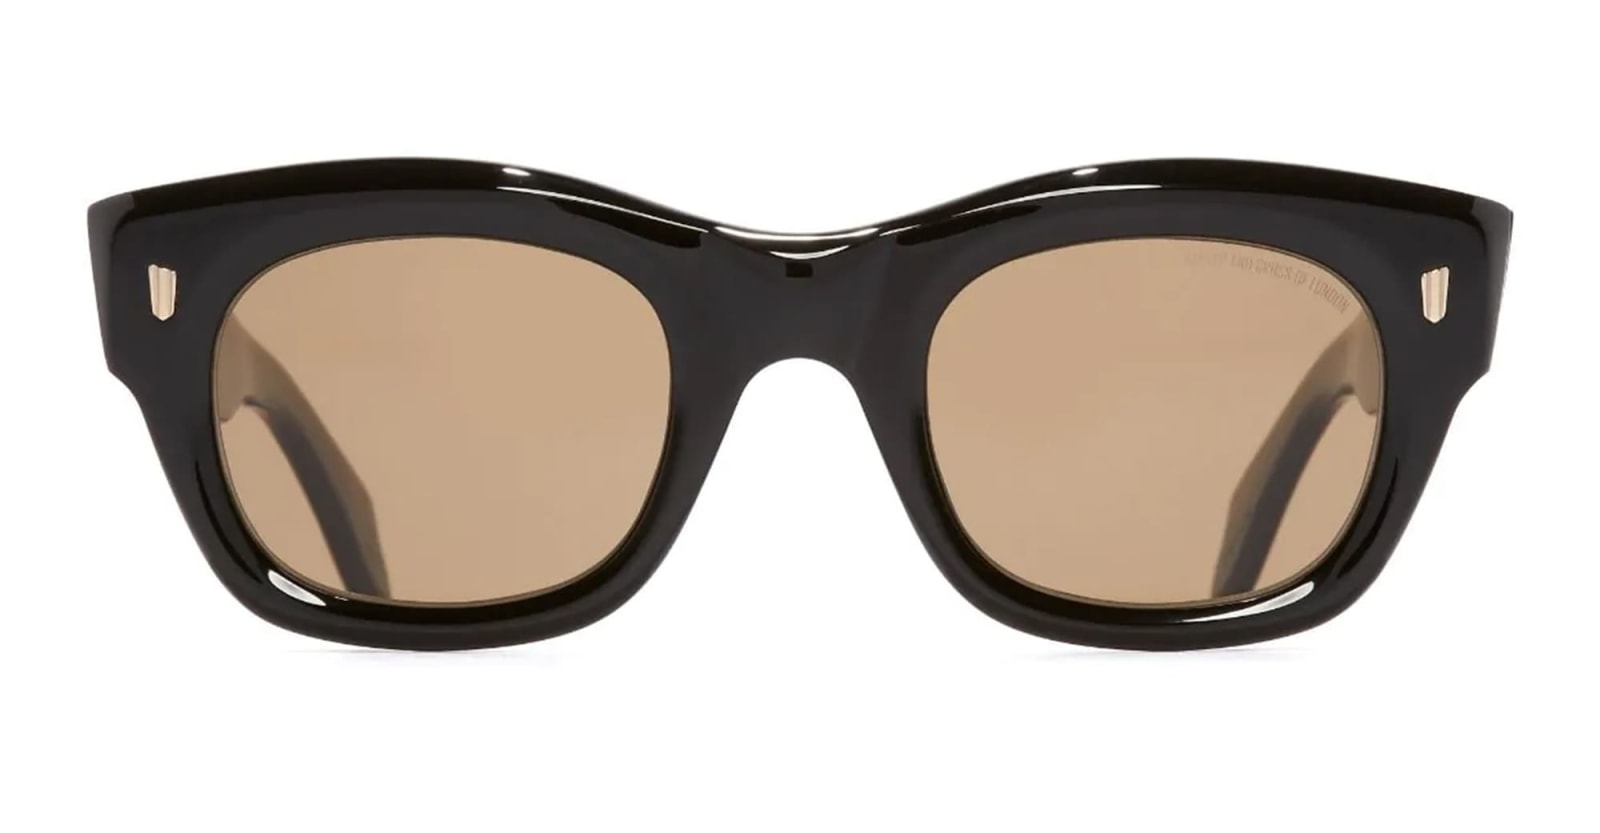 9261 / Olive On Black Sunglasses